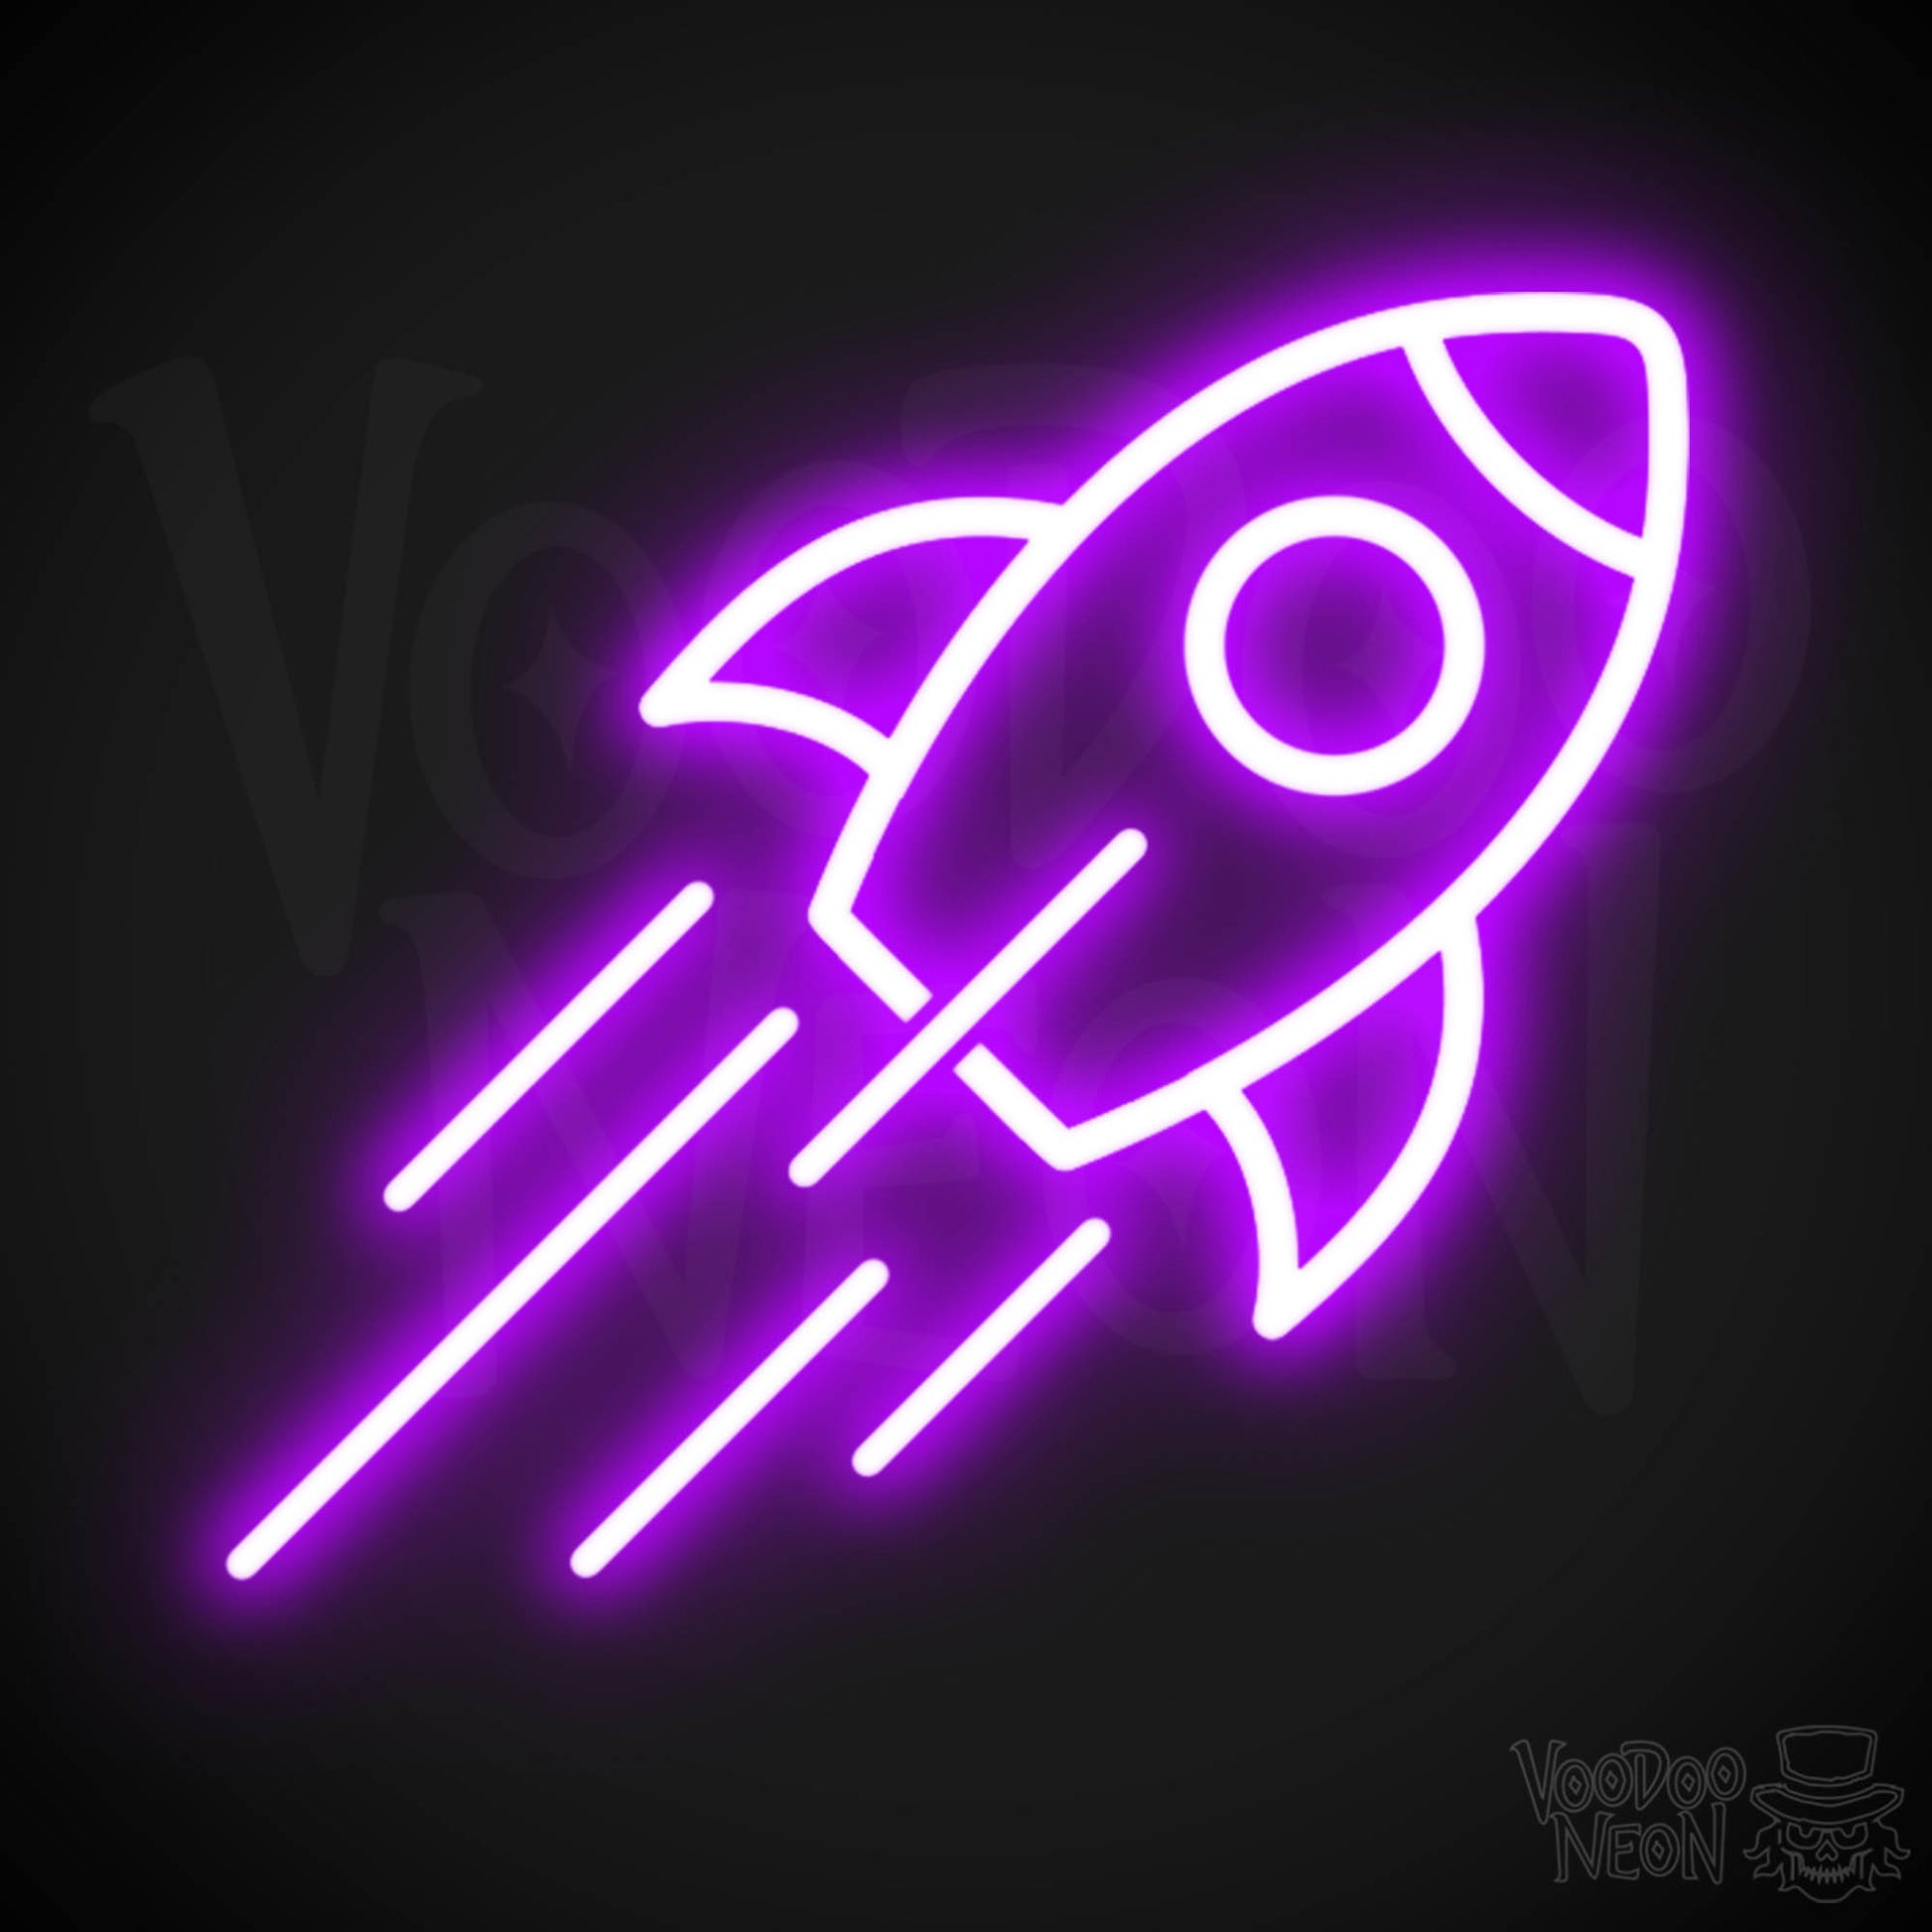 Neon Rocket - Rocket Neon Sign - Rocket Ship Neon Wall Art - Color Purple